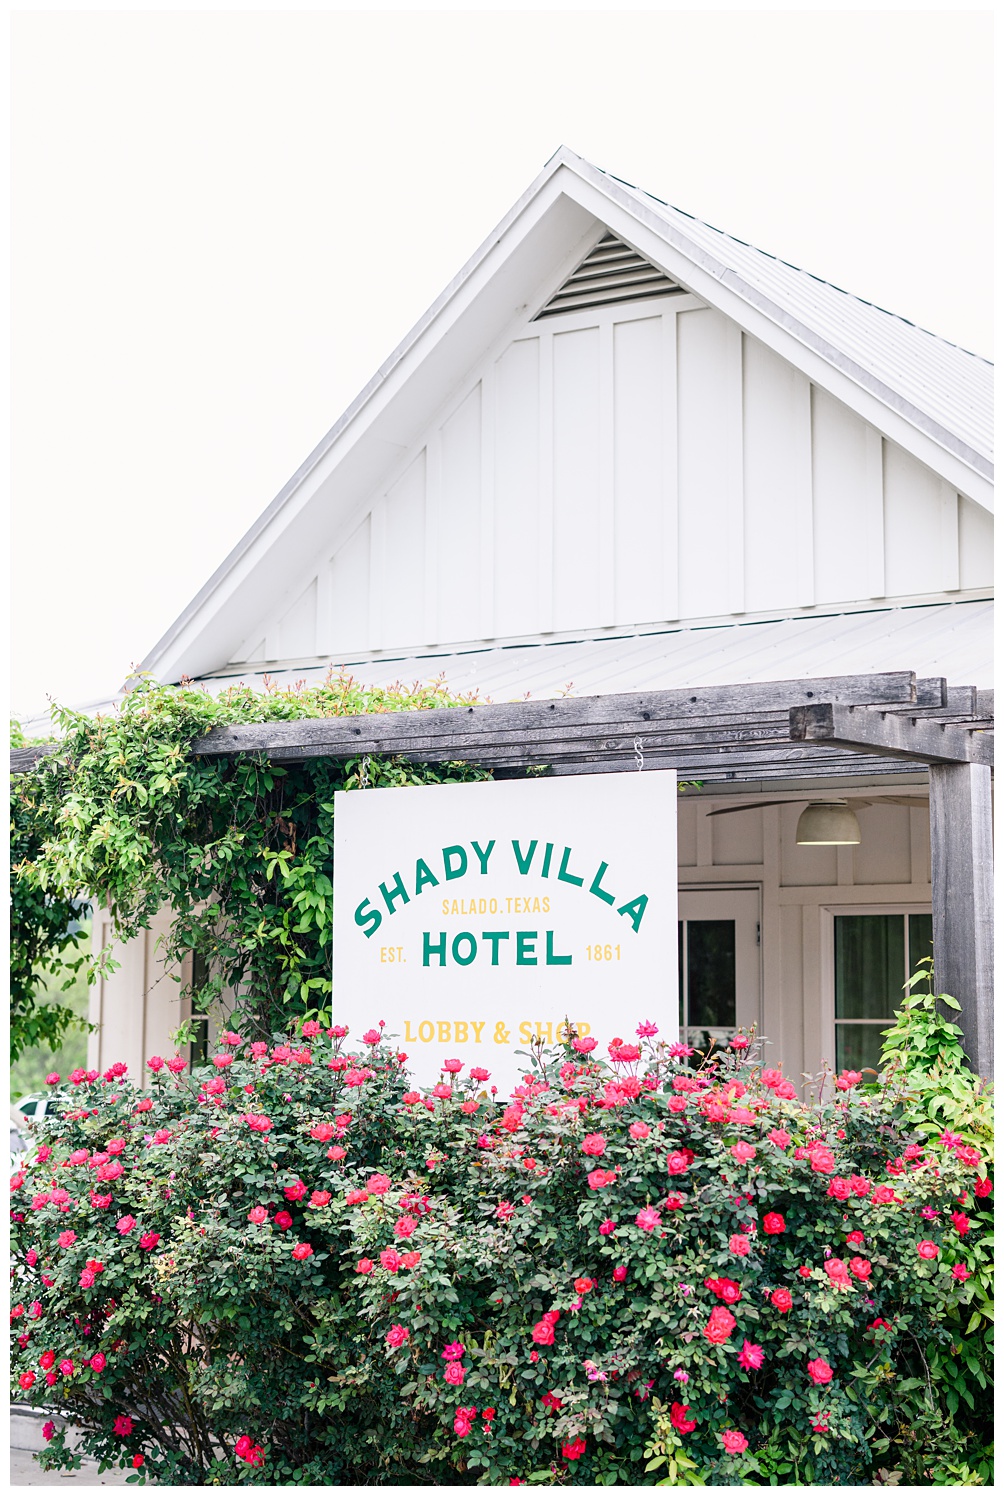 Shady Villa Hotel in Salado Texas